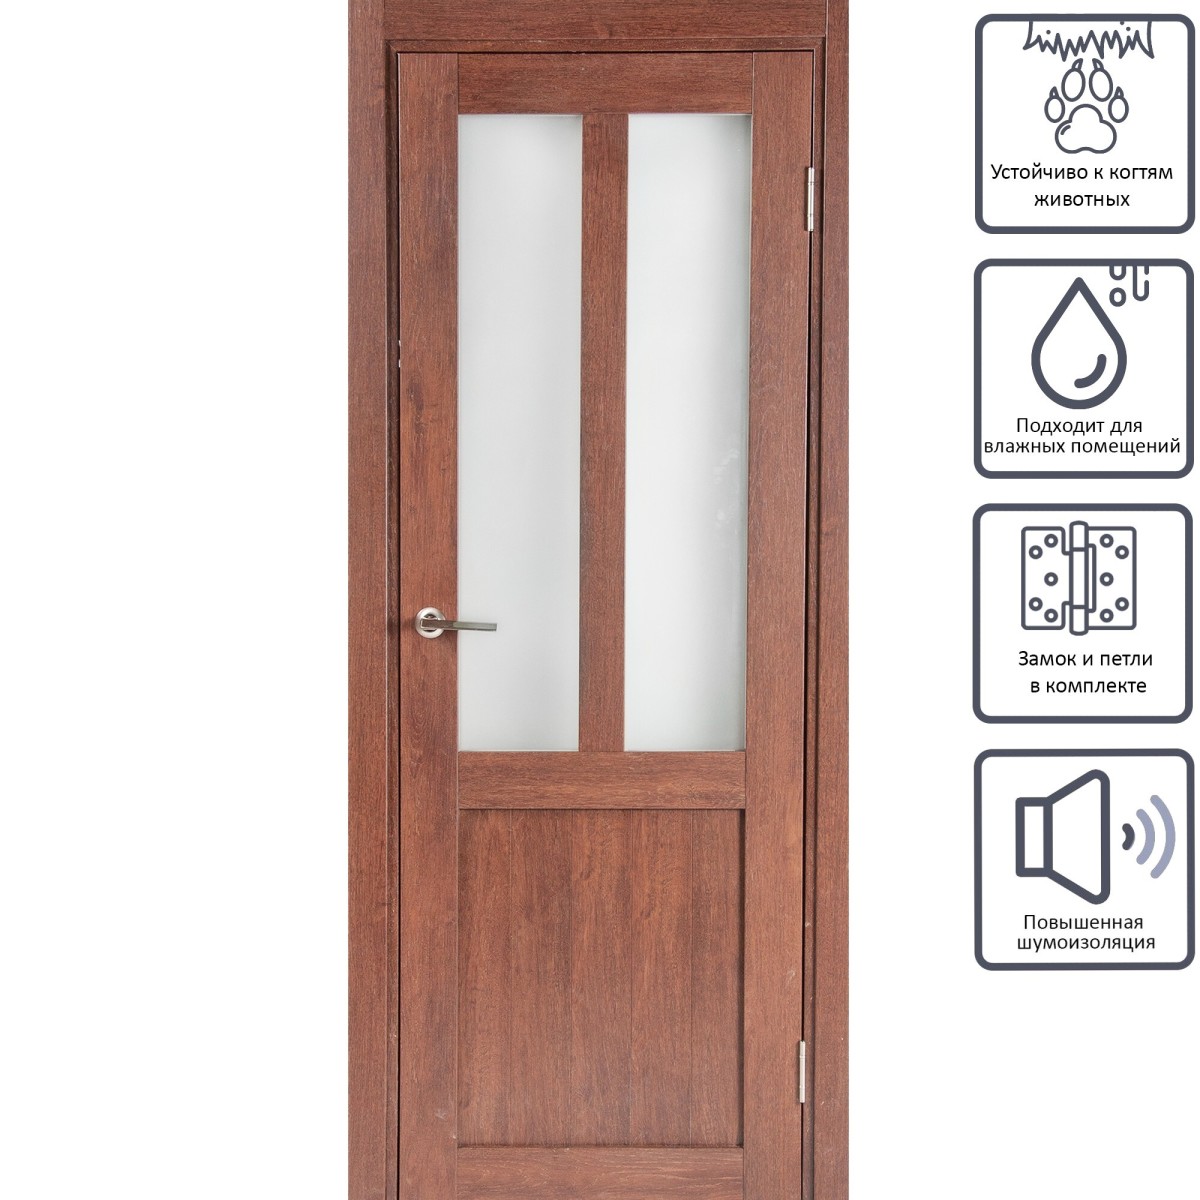 Дверь межкомнатная остеклённая Кантри 70x200 см, ПВХ, цвет дуб сан-томе, с фурнитурой